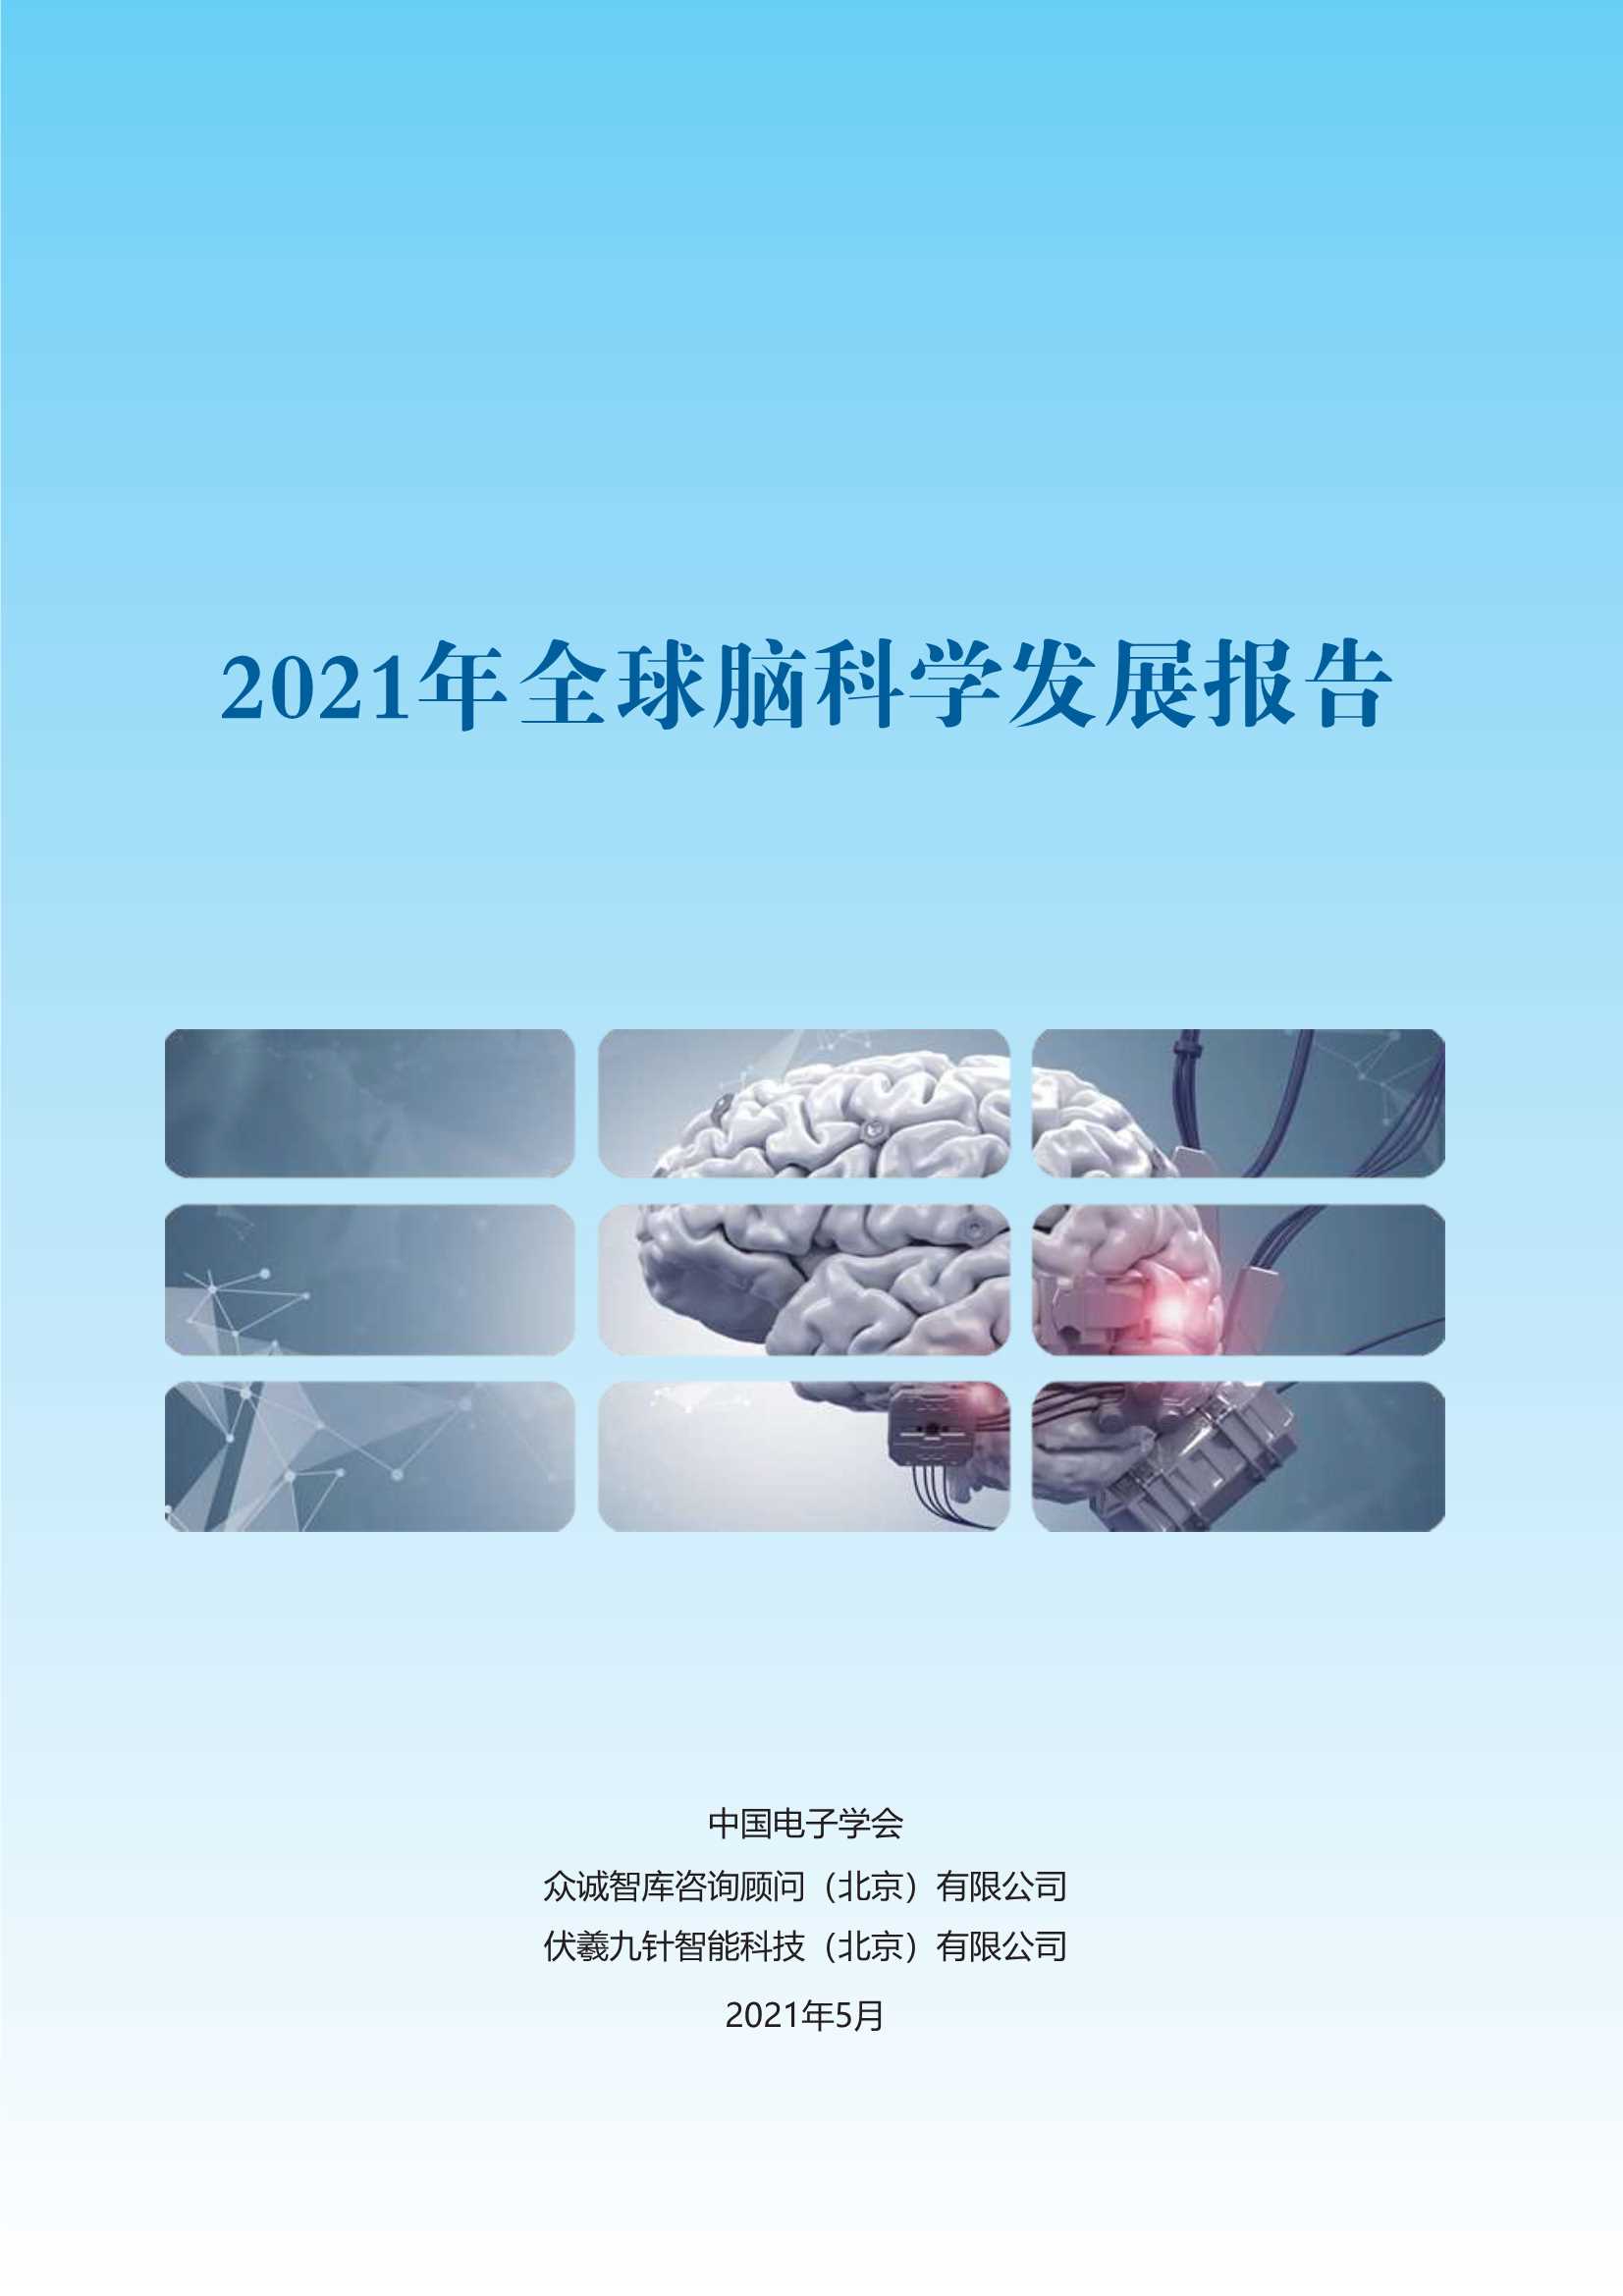 中国电子学会-2021全球脑科学发展报告-2021.06-42页